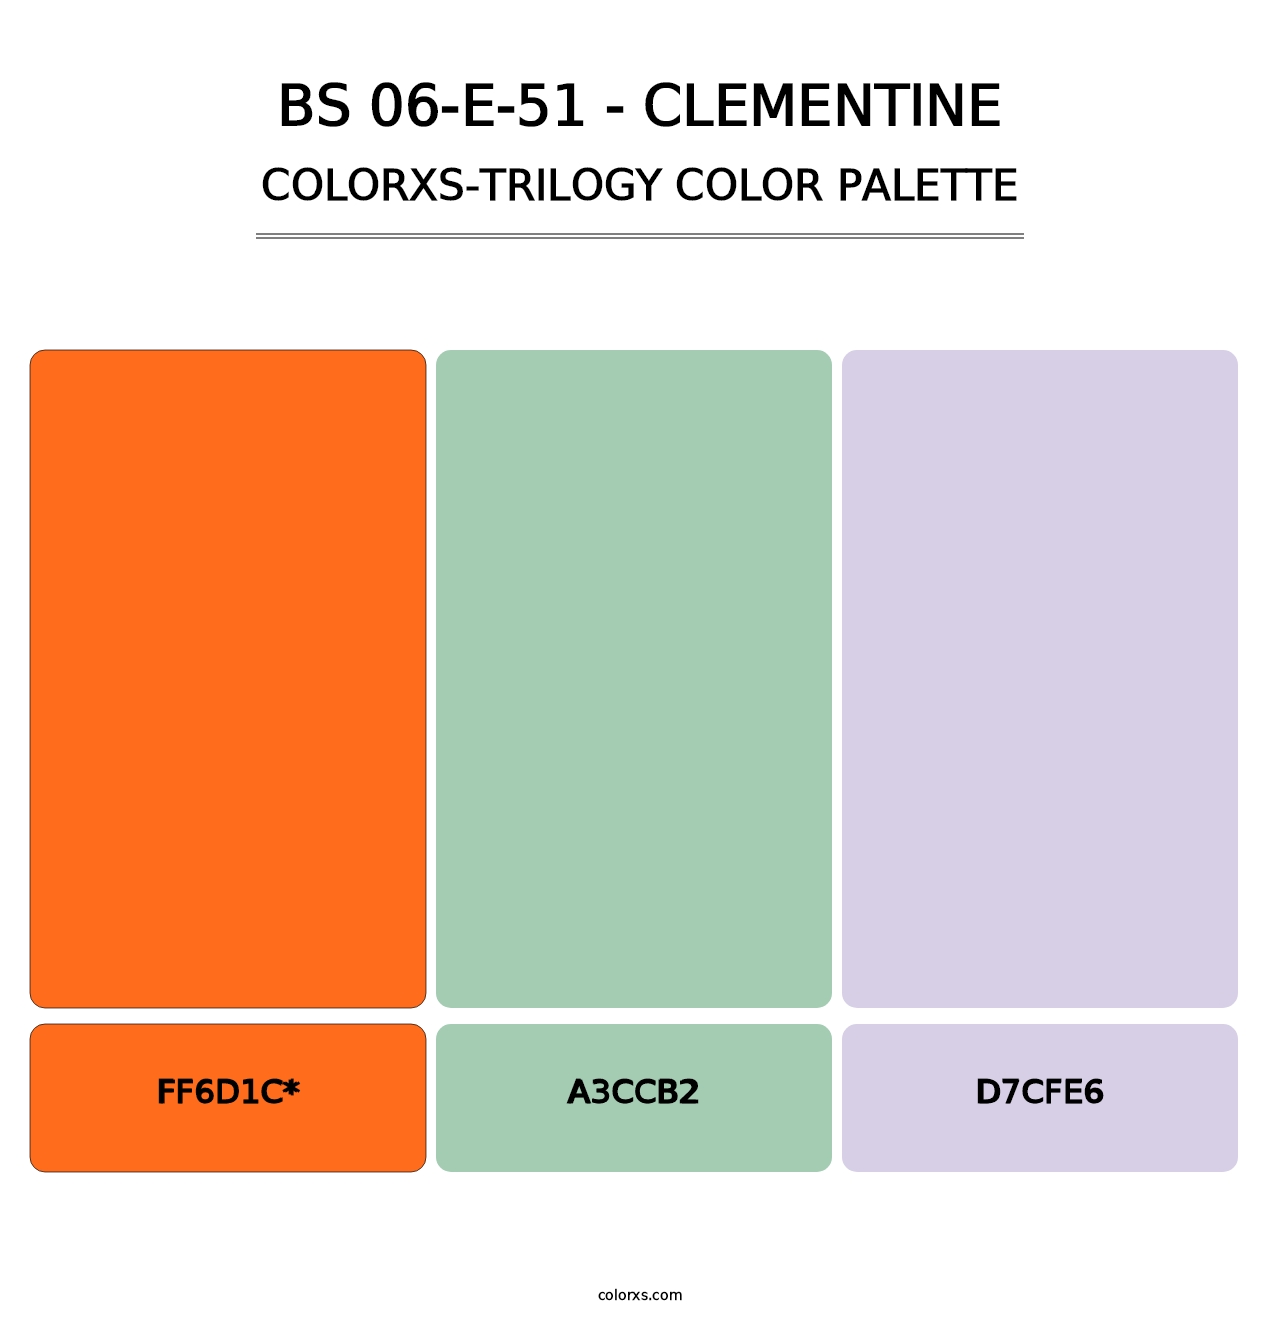 BS 06-E-51 - Clementine - Colorxs Trilogy Palette